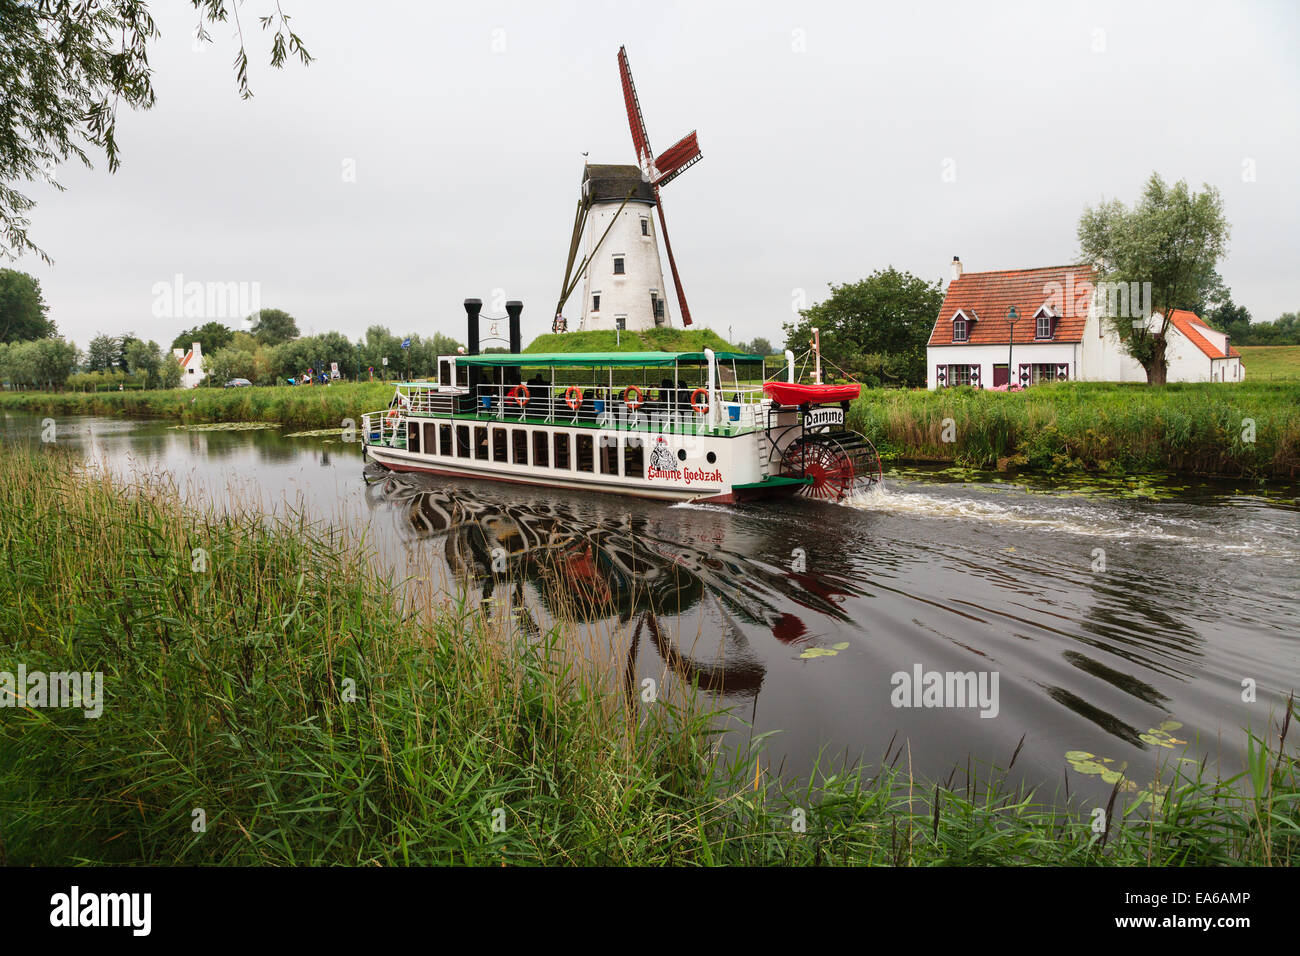 Die Lamme Goedzak Tretboot in der Nähe der Windmühle Schellemolen neben dem Kanal Damse Vaart, Damme, Belgien. Stockfoto